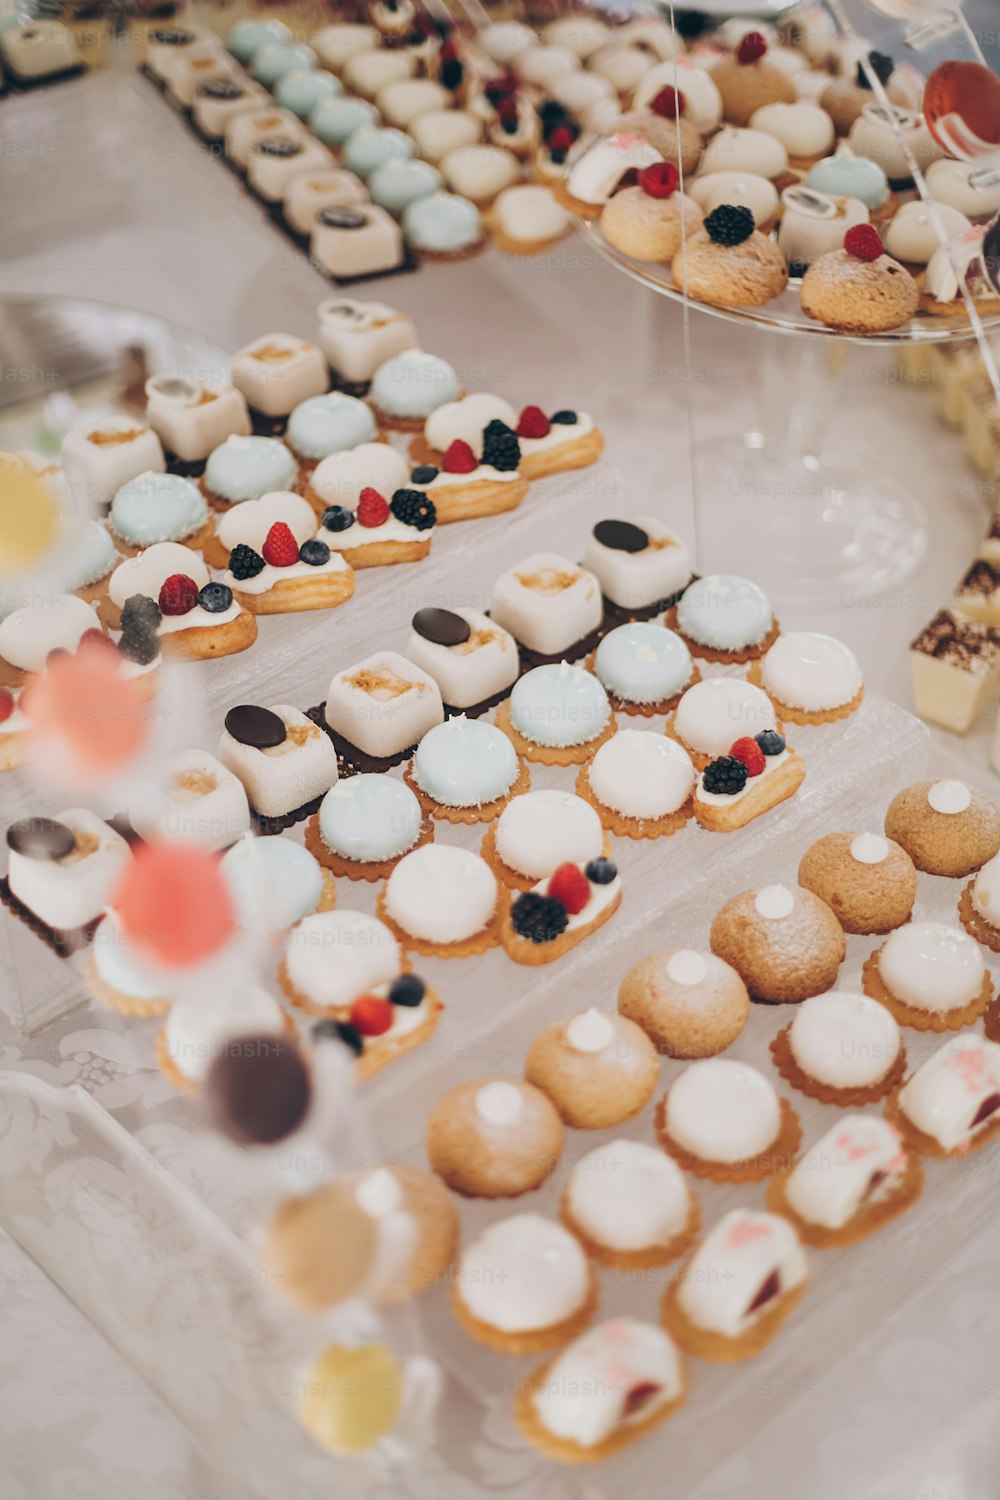 Köstliche cremige Desserts mit Früchten, Macarons, Kuchen und Keksen auf dem Tisch bei der Hochzeitsfeier im Restaurant. Luxus-Catering-Service. Hochzeit Schokoriegel.